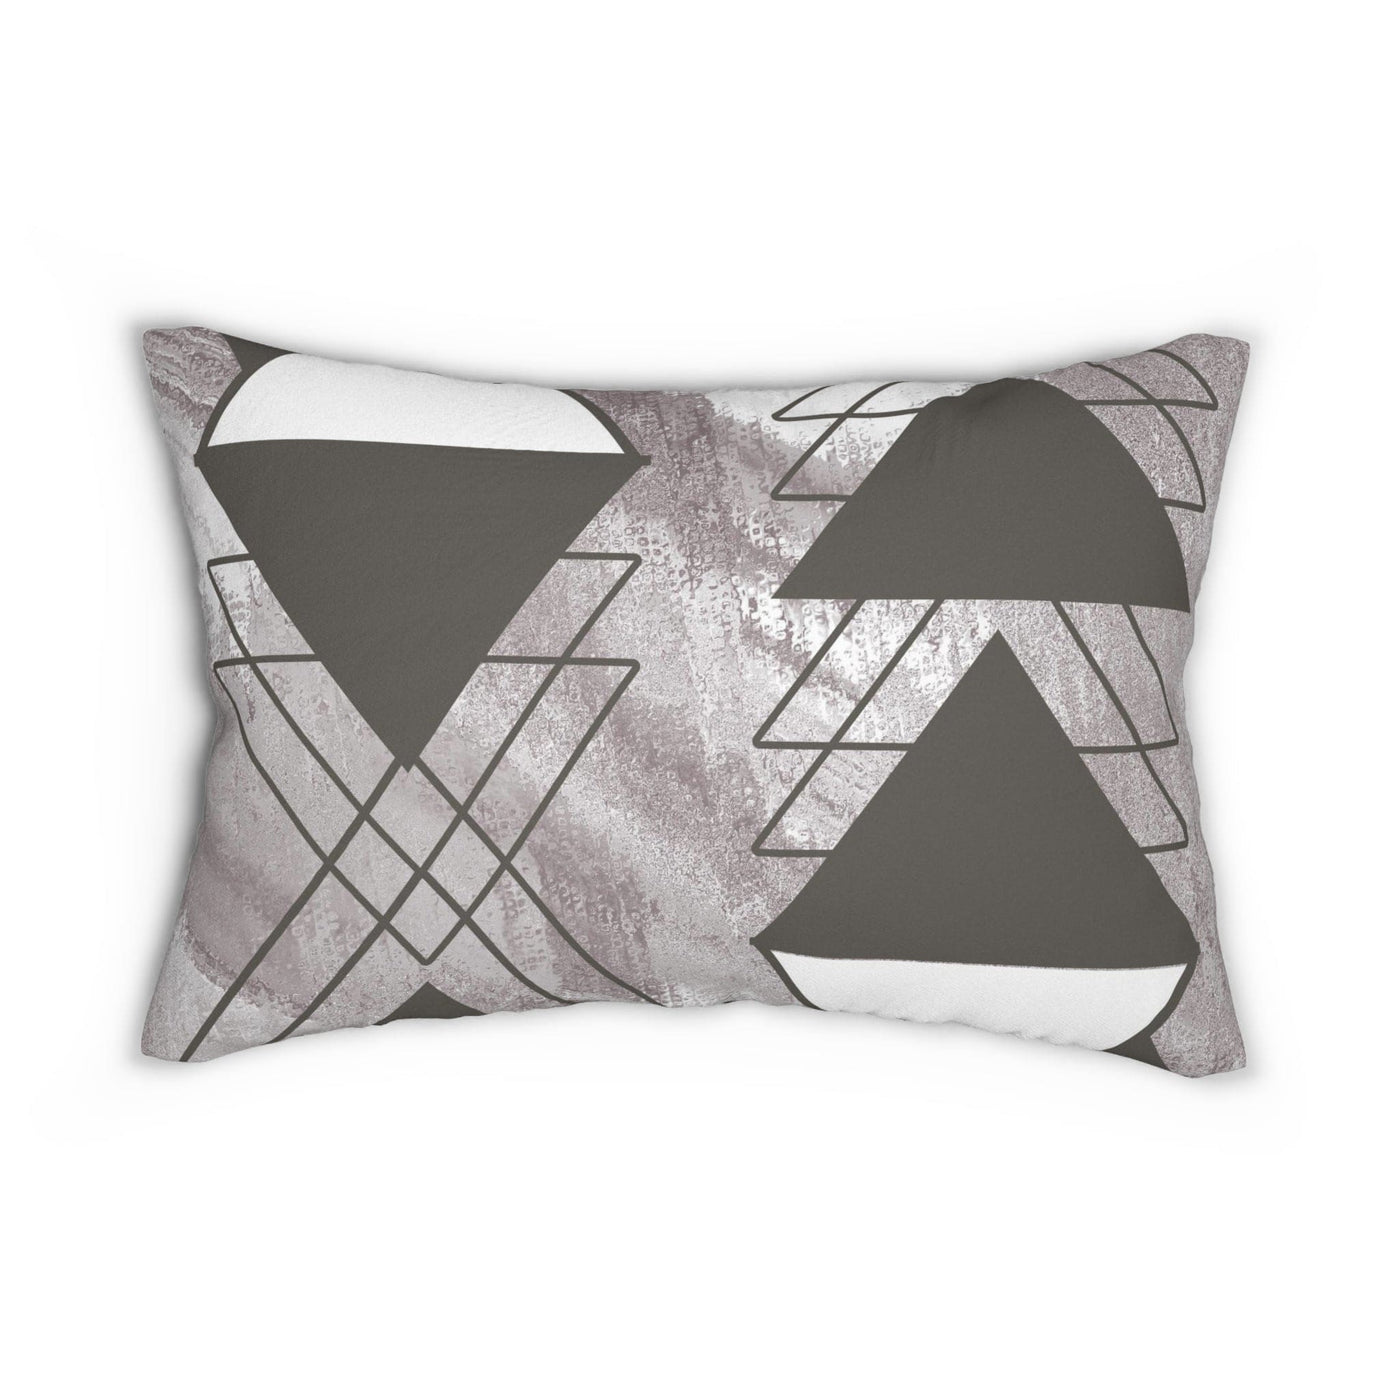 Decorative Lumbar Throw Pillow - Ash Grey And White Triangular Colorblock